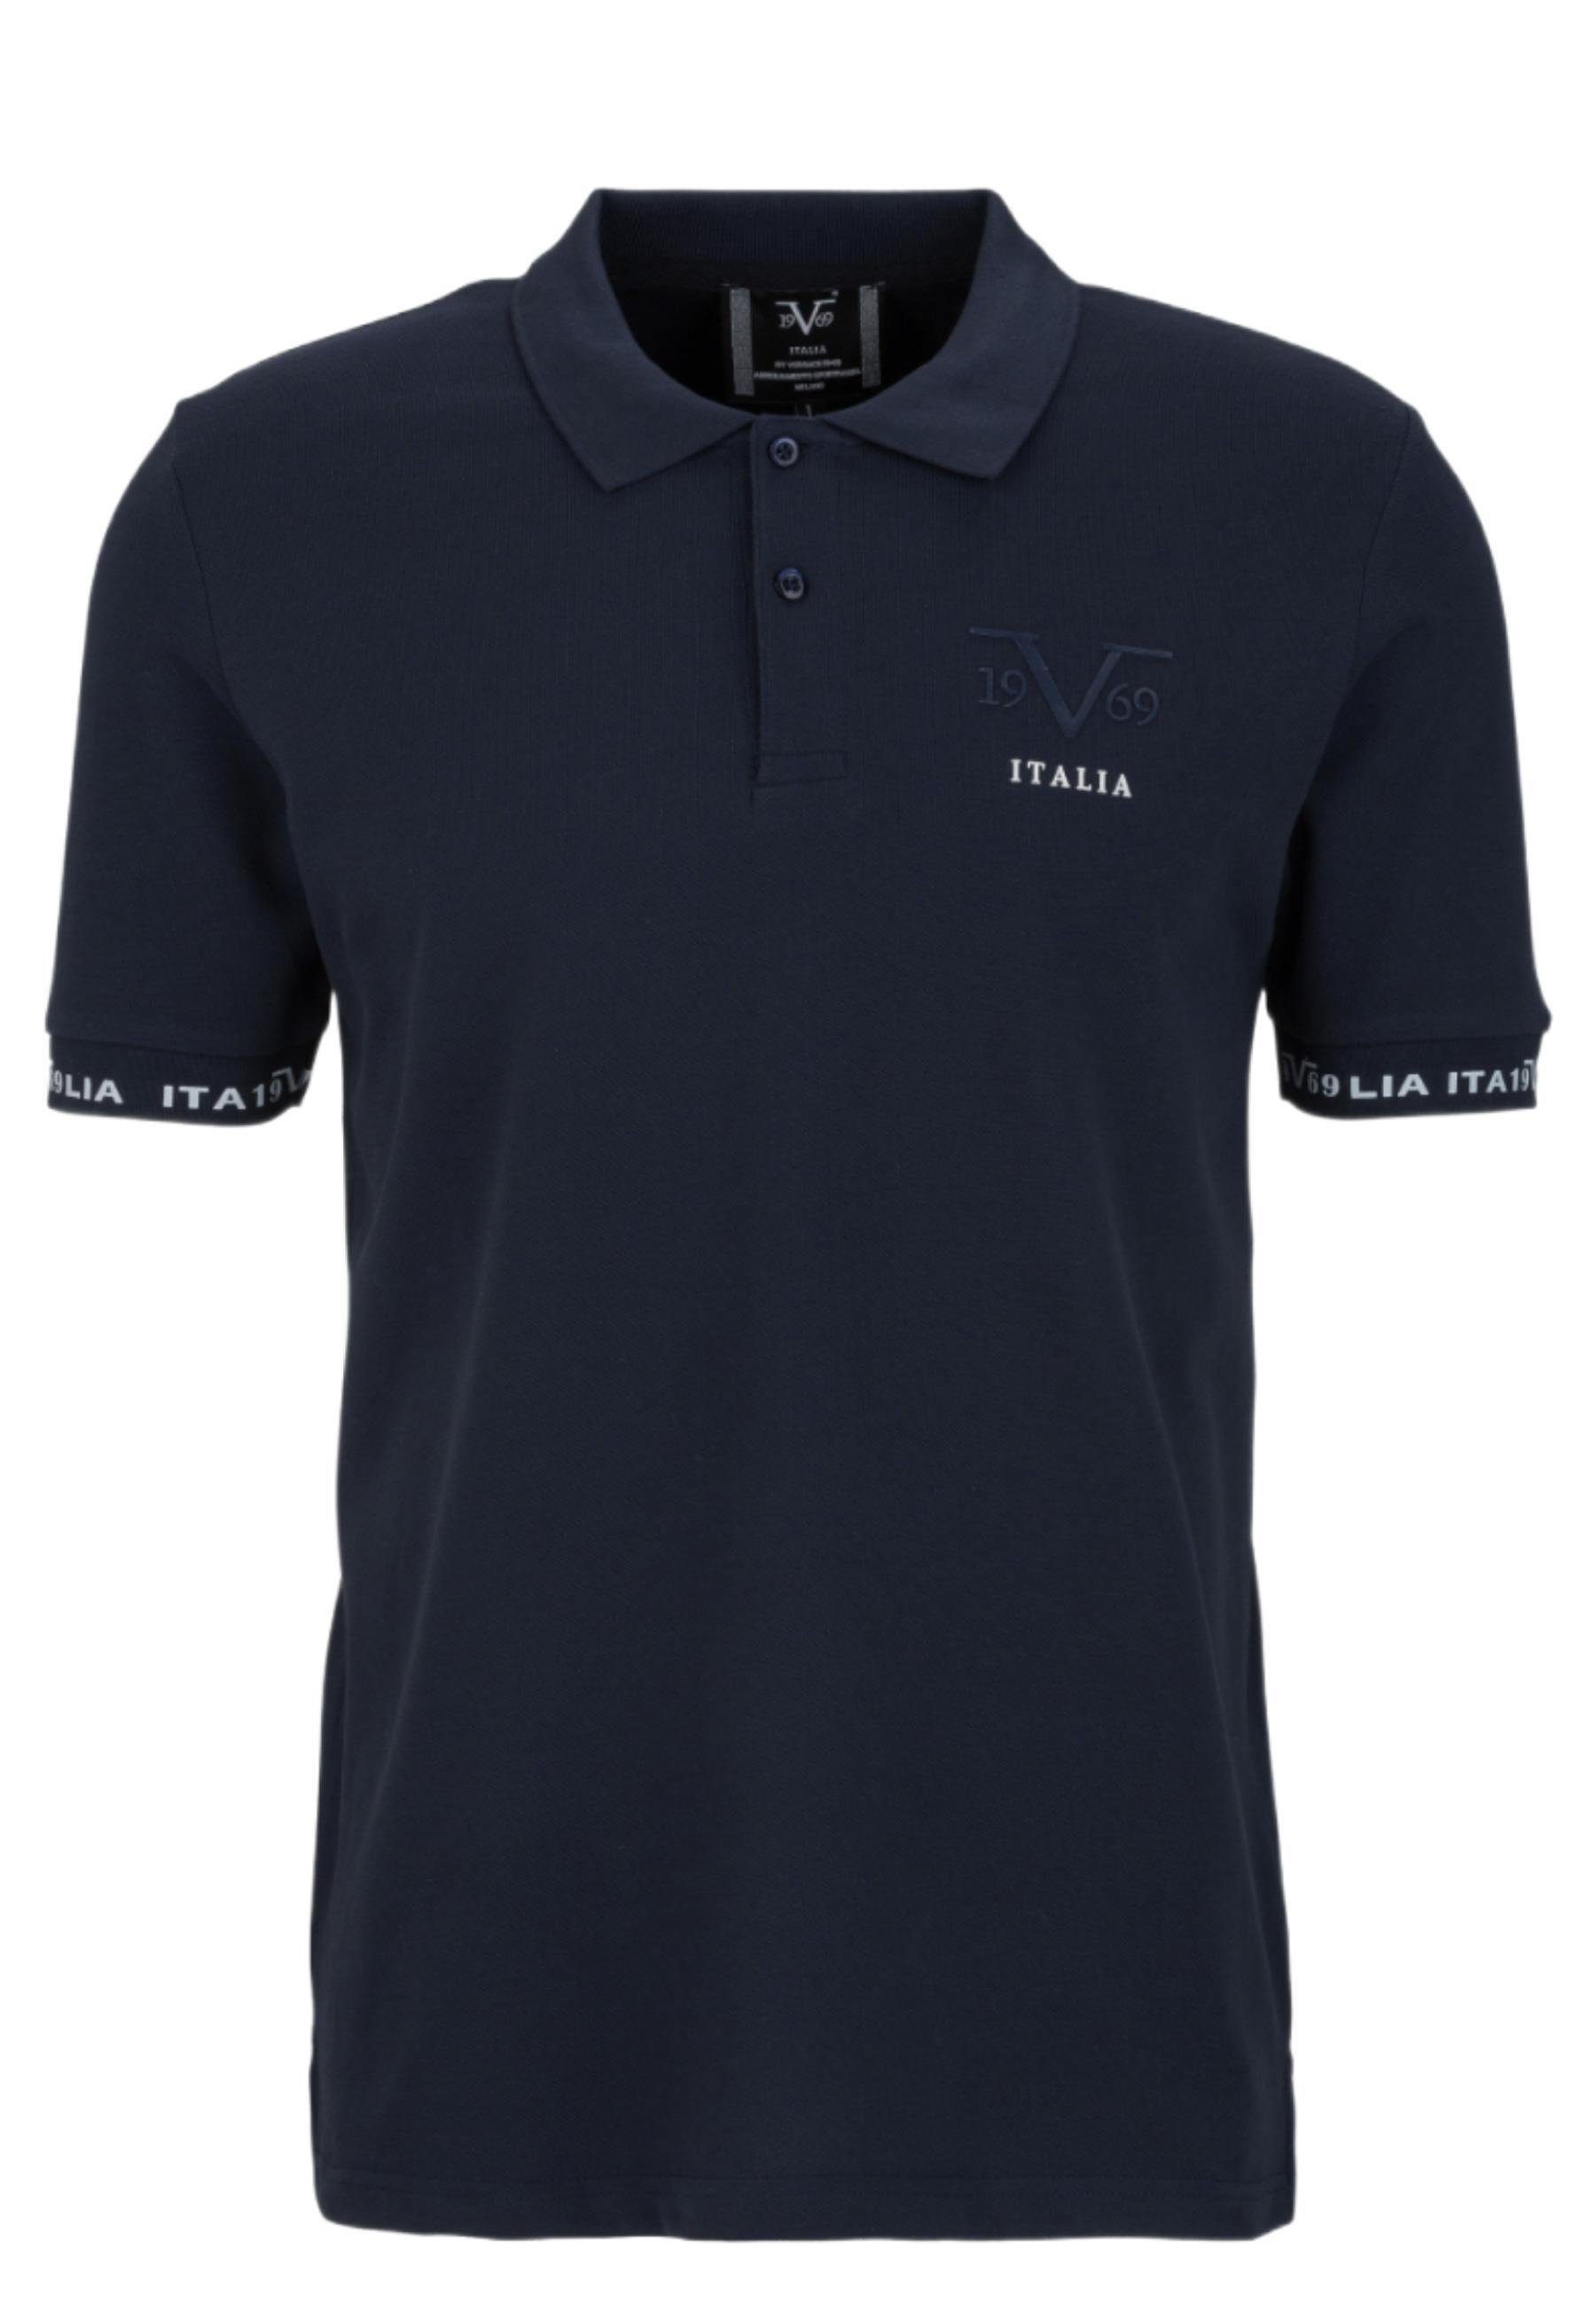 blau T-Shirt Polo Versace by Italia 19V69 Harry Shirt